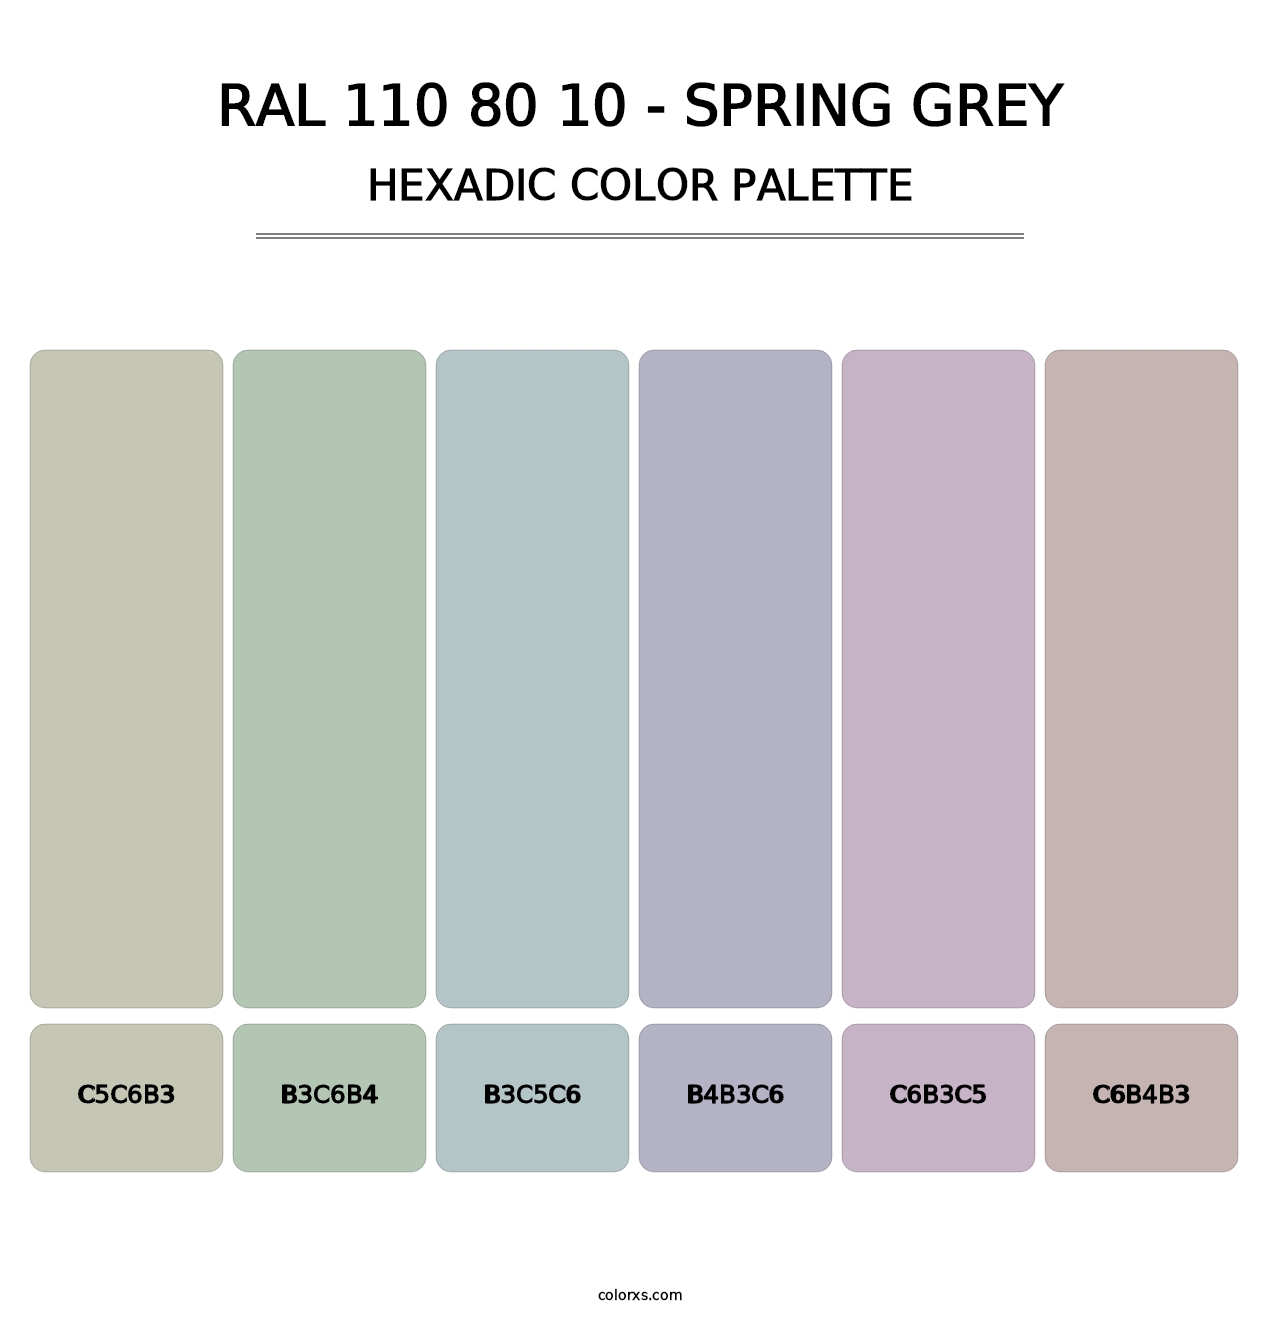 RAL 110 80 10 - Spring Grey - Hexadic Color Palette